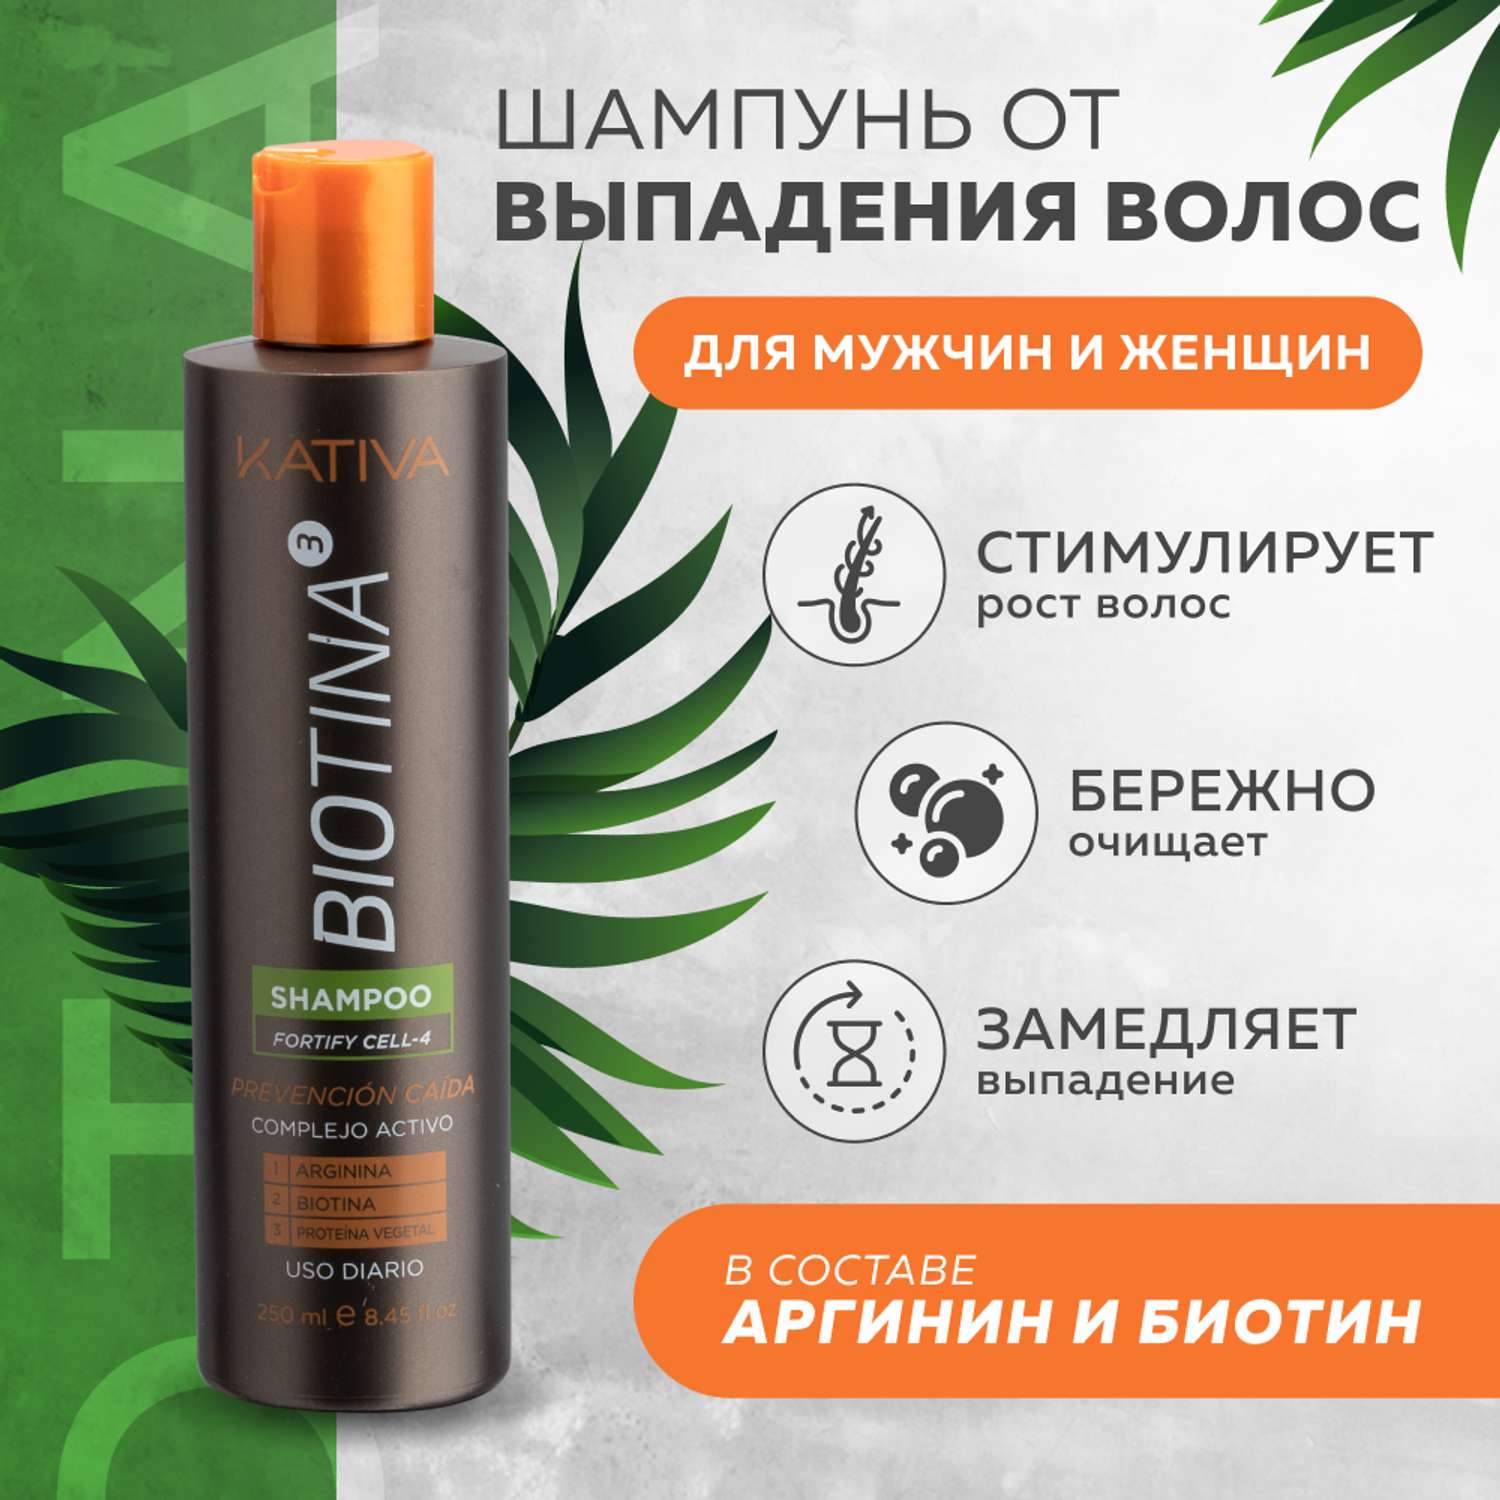 Шампунь Kativa против выпадения волос с биотином Biotina 250 мл - фото 2